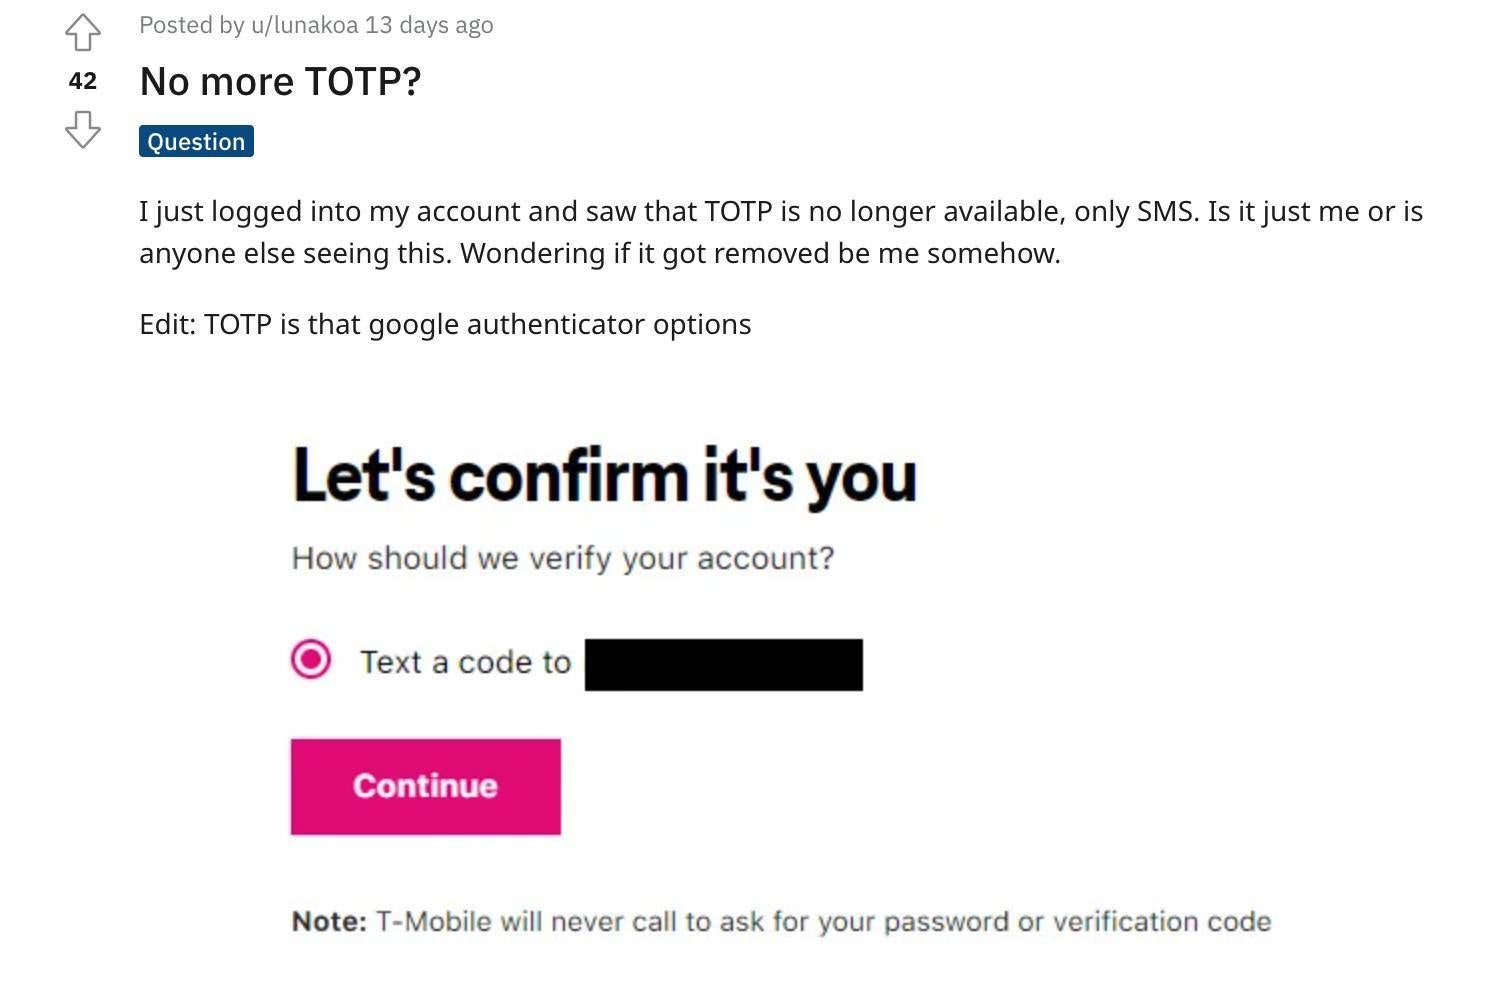 T-Mobile artık kullanıcıların iki adımlı doğrulama için Google Authenticator'ı kullanmasına izin vermiyor - Bu geçici bir değişiklik olduğundan T-Mobile kullanıcılarının son hamle hakkında endişelenmelerine gerek yok